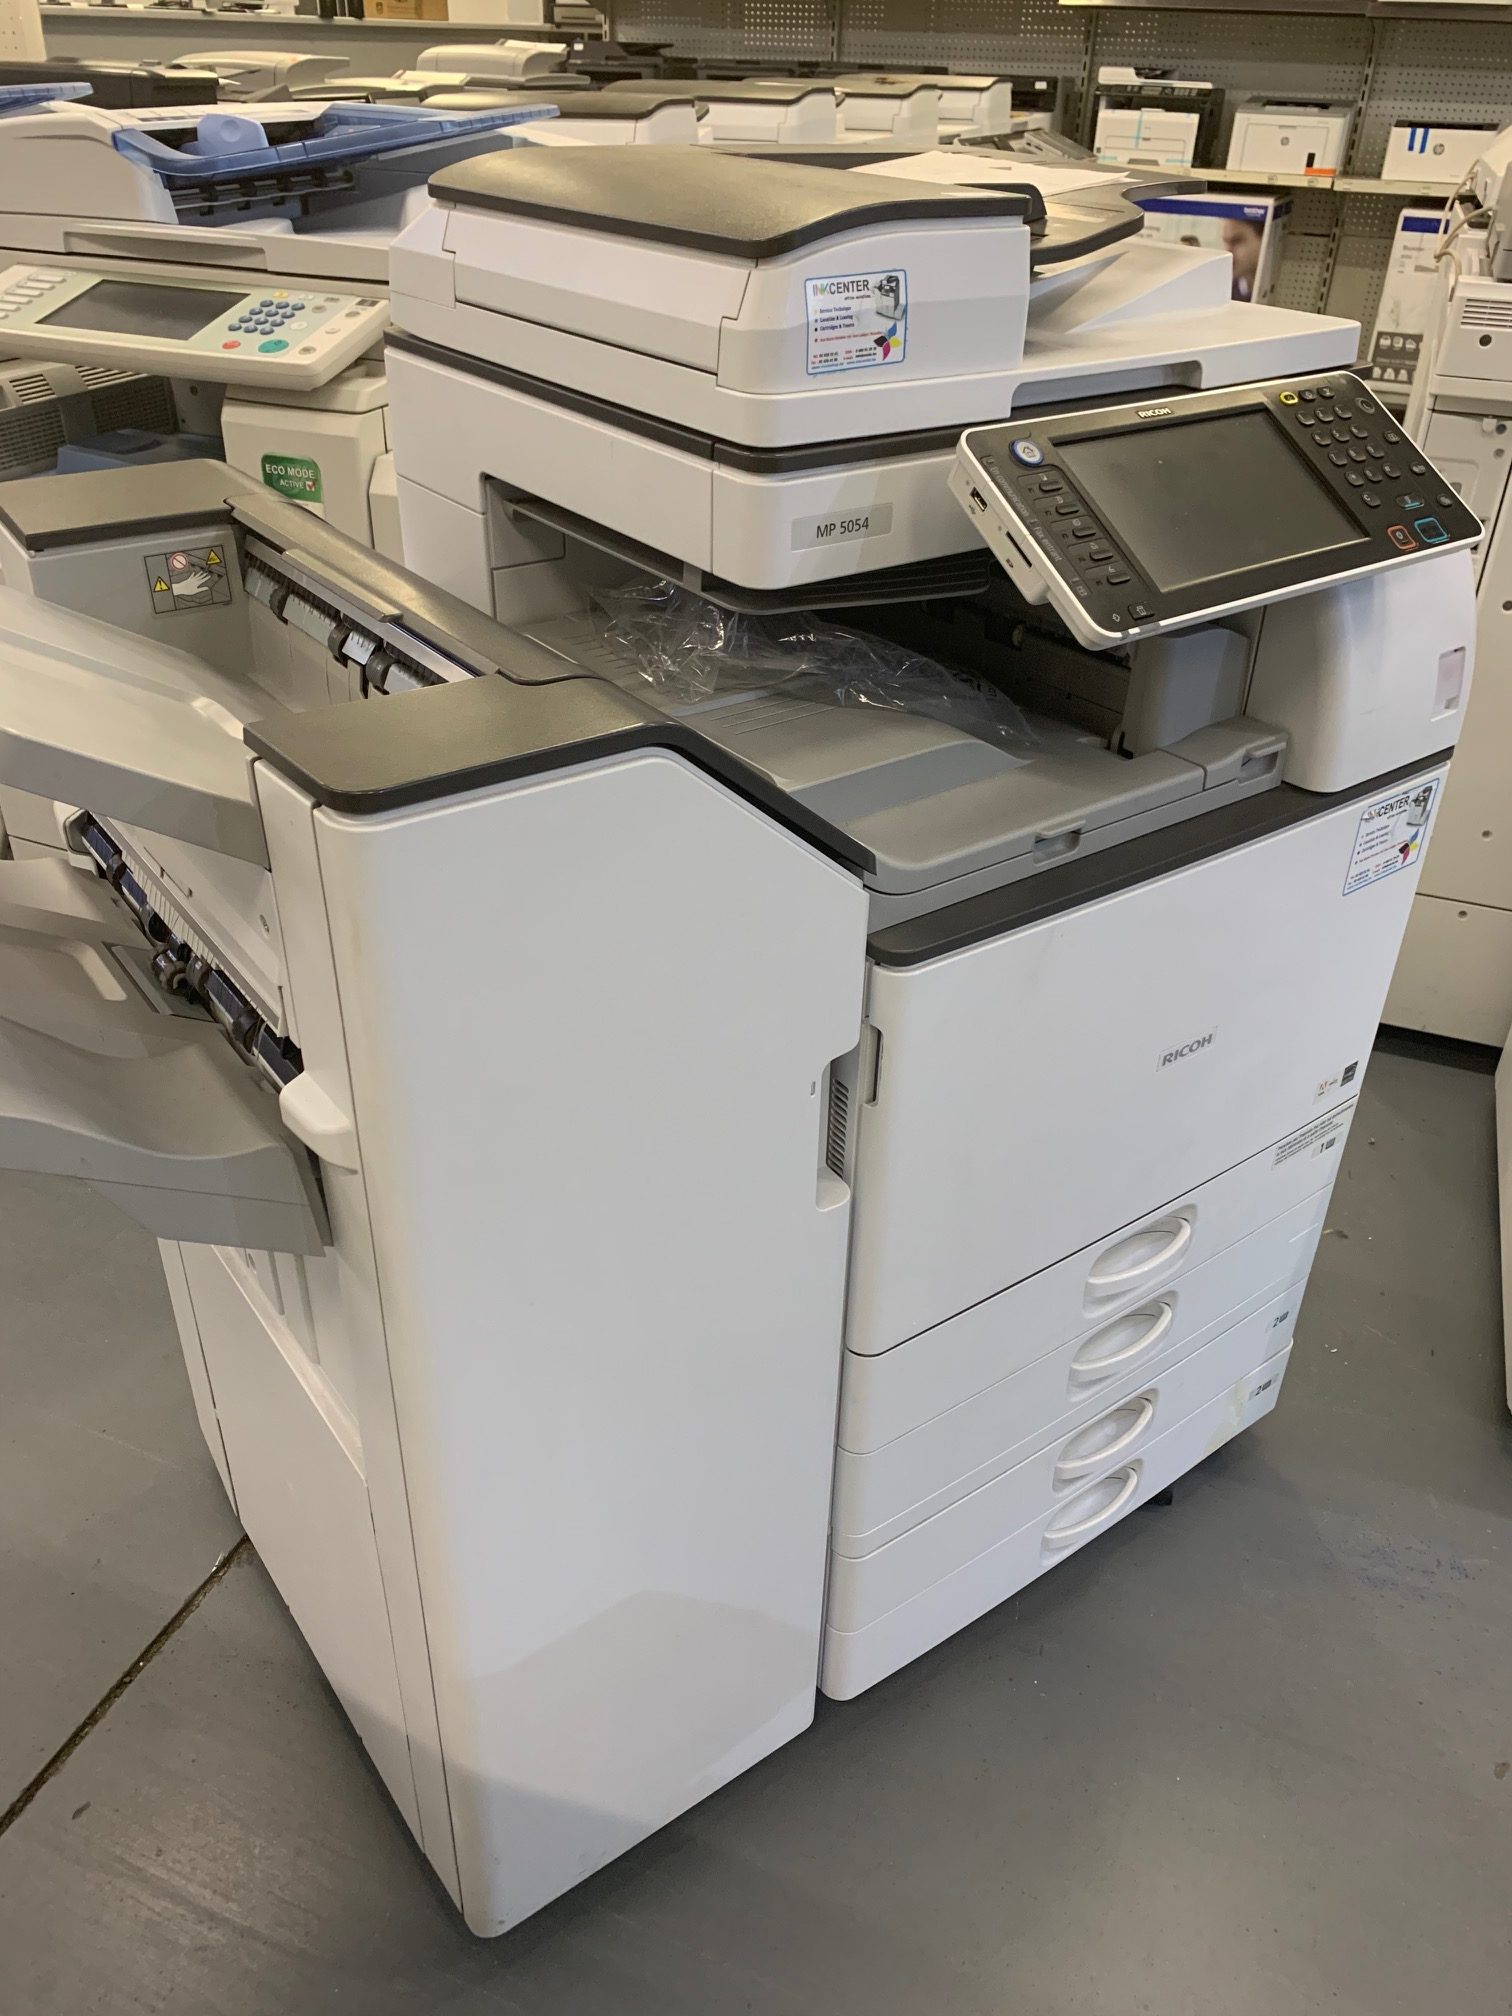 Photocopieur éco-responsable Imprimante photocopieur scanner Ricoh